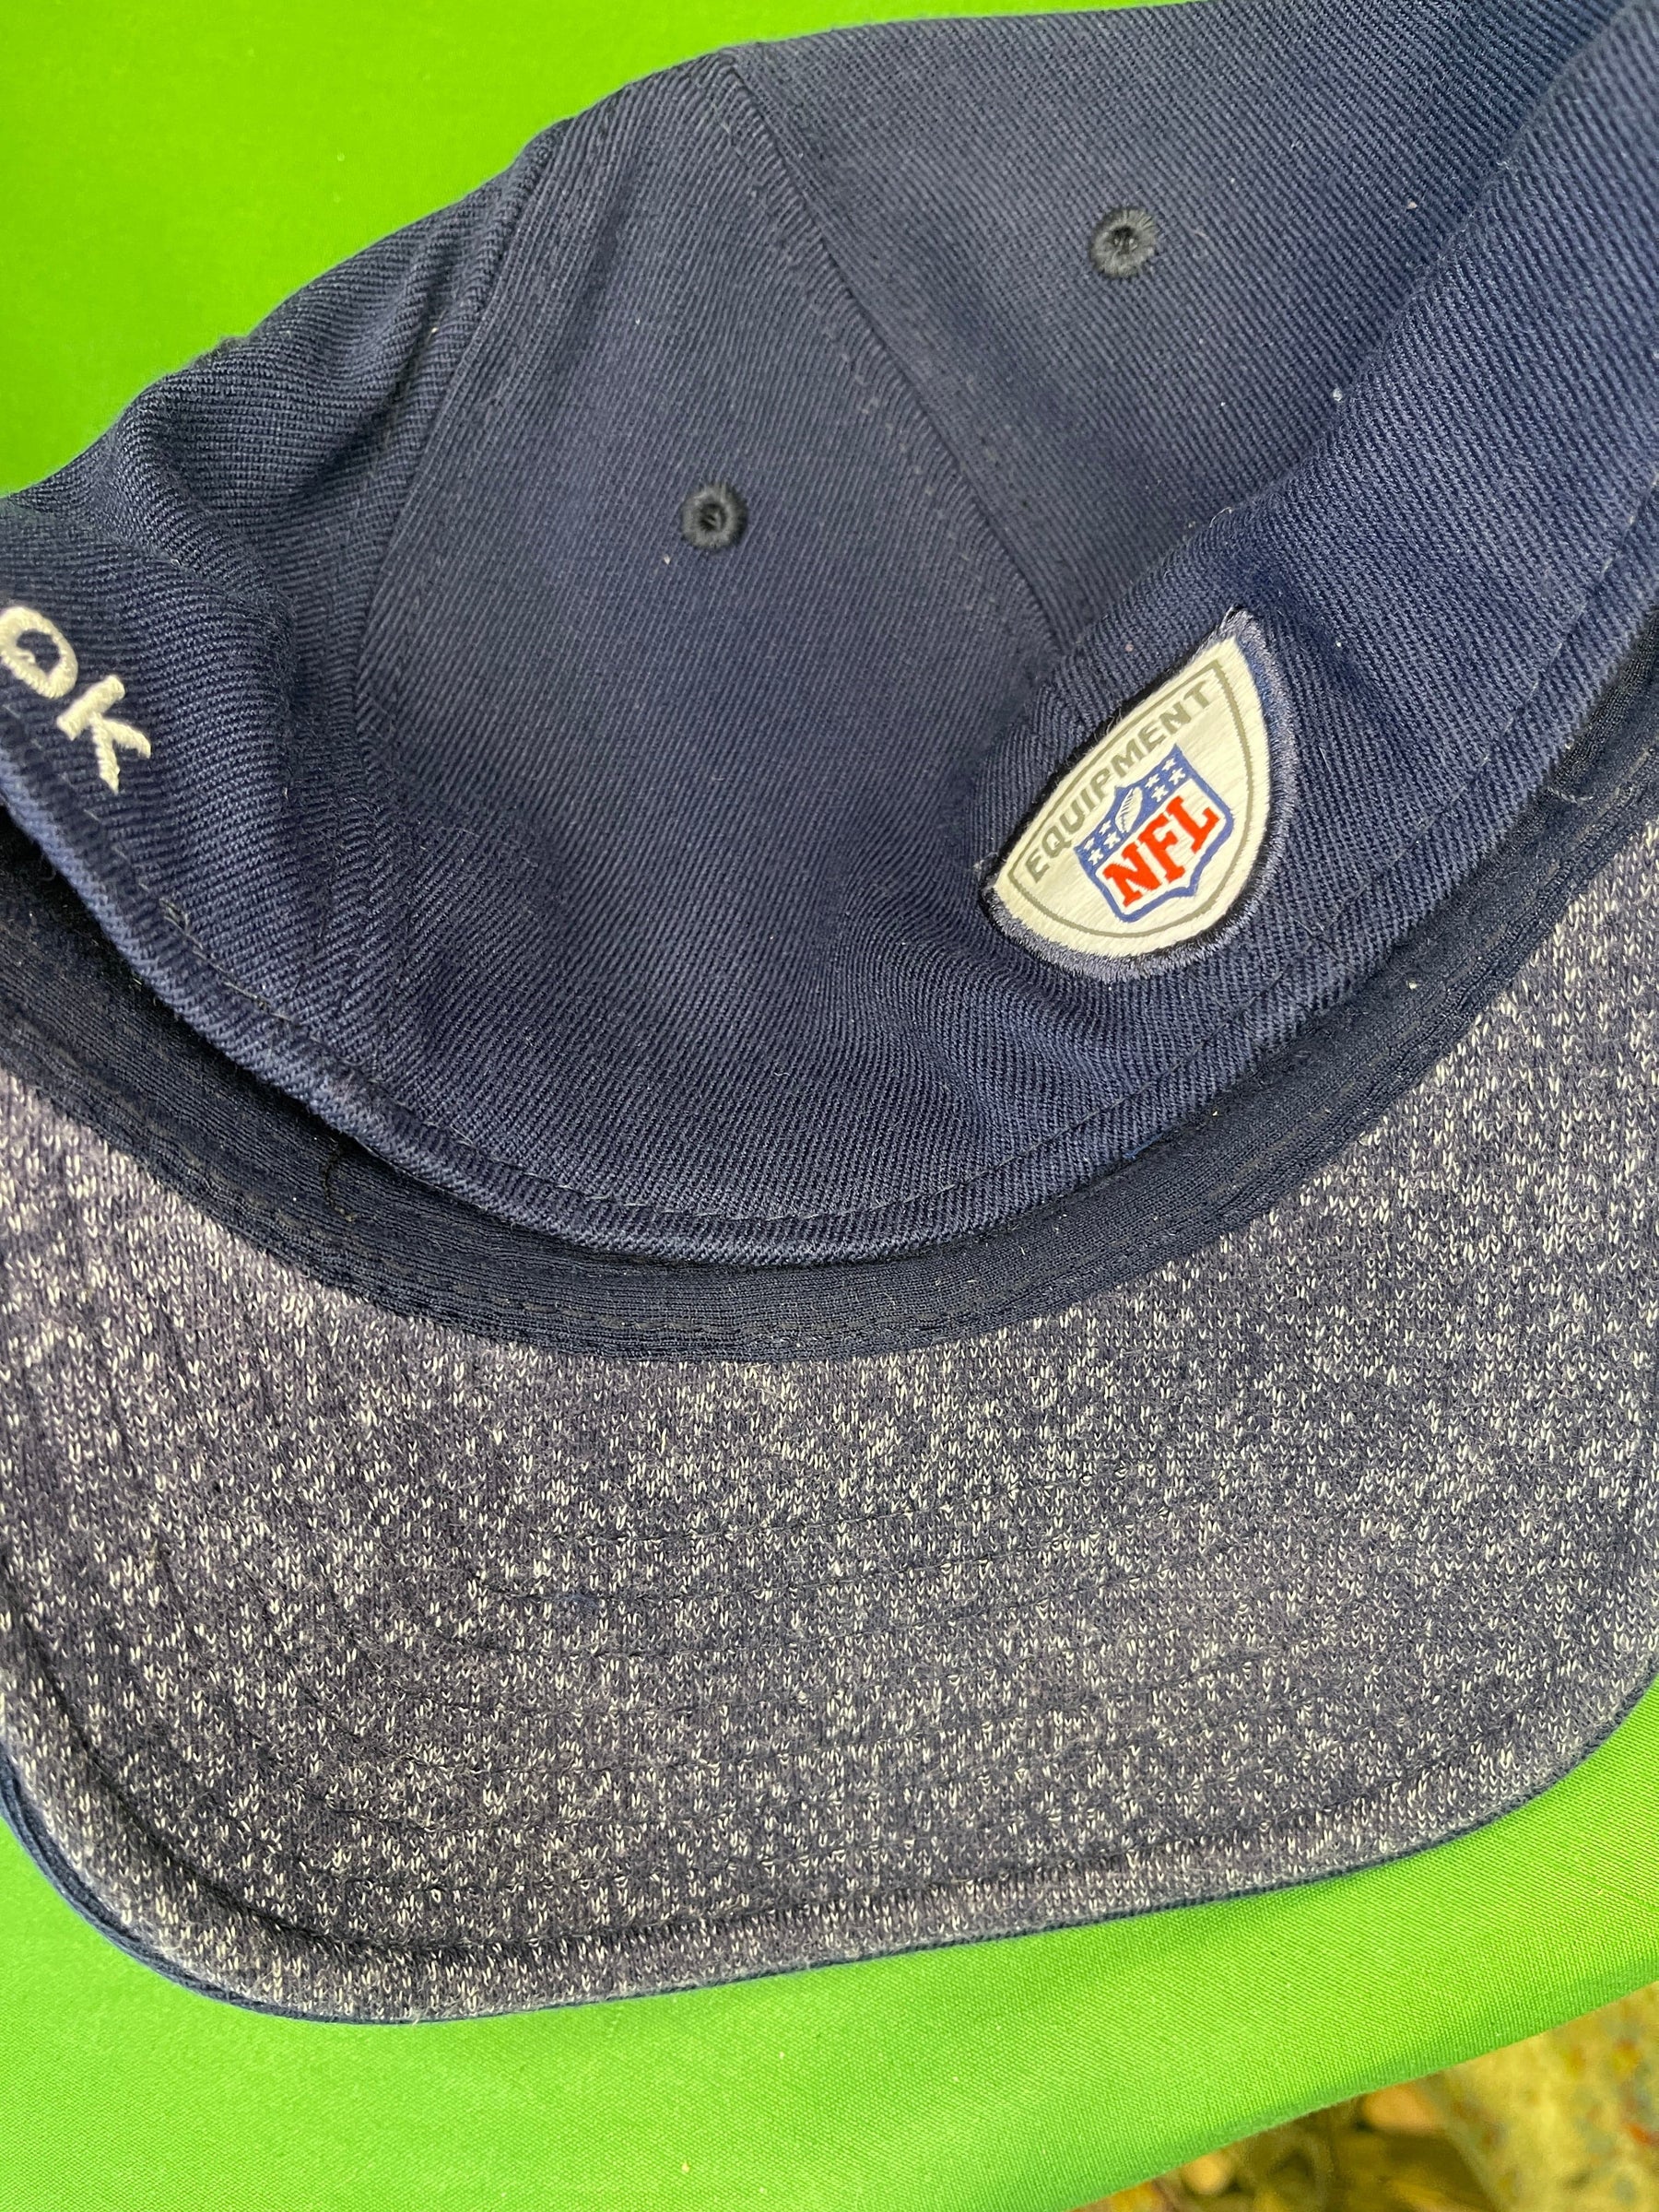 NFL Denver Broncos Reebok Vintage Wool Blend Hat/Cap Large/X-Large